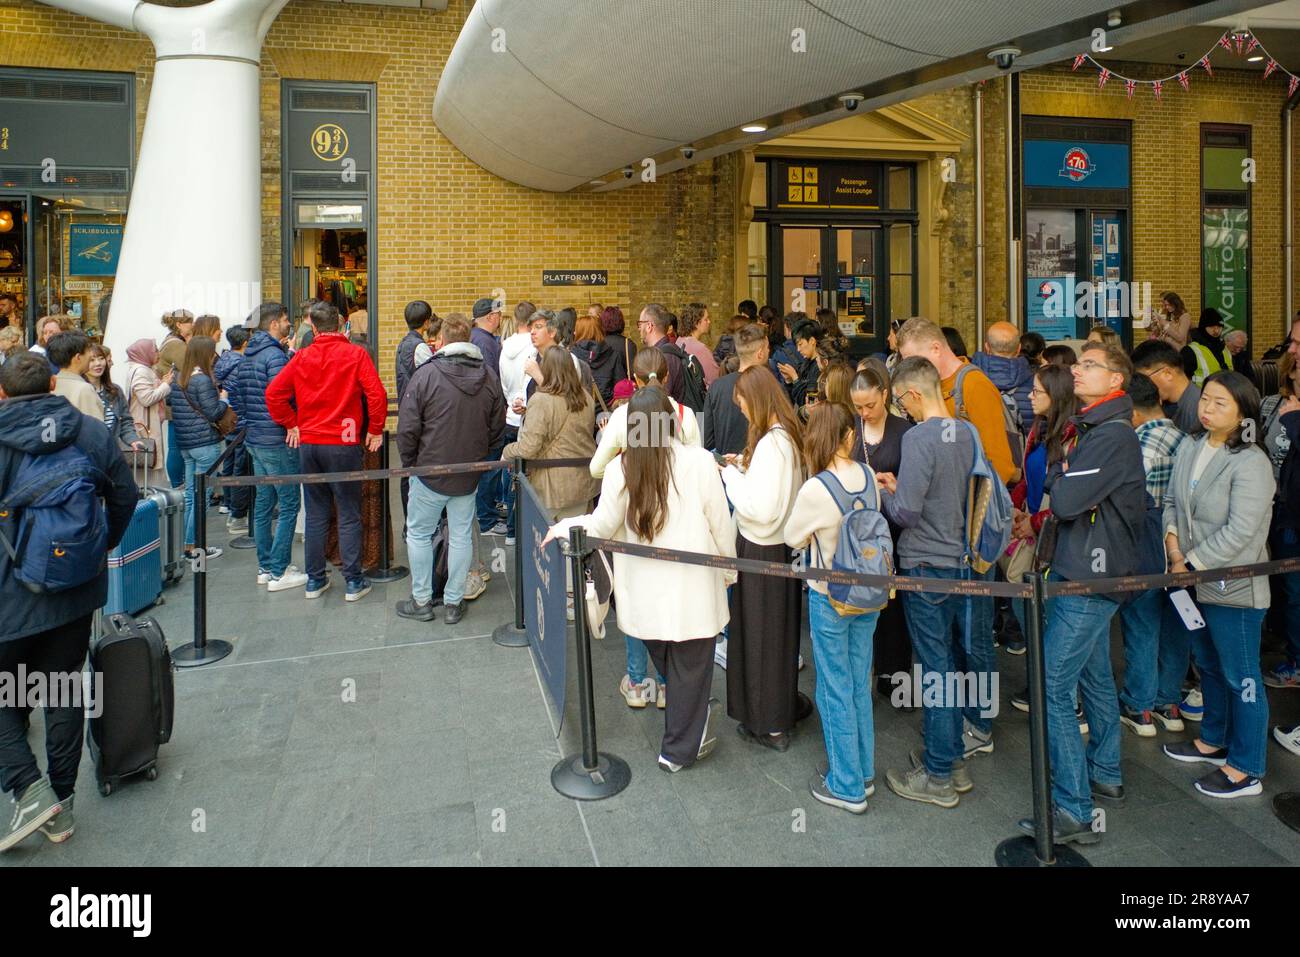 Longue file d'attente de personnes attendant de voir leur photo prise à la plate-forme 9 3/4 à la gare de Kings Cross Banque D'Images